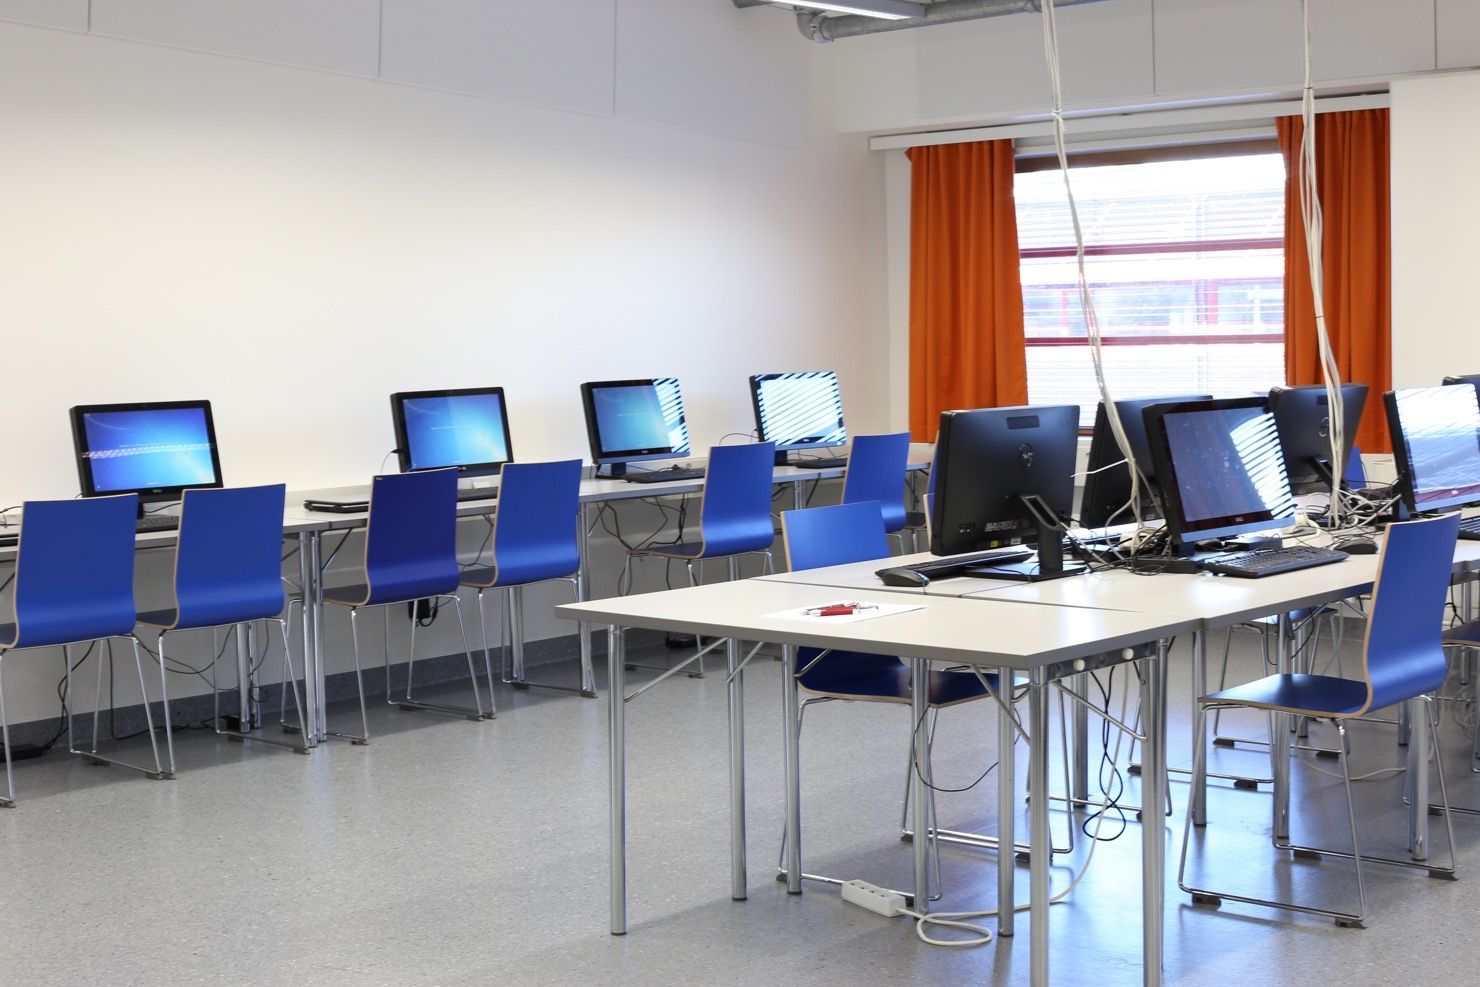 Dataklassutrymmen med blåa stolar och datorer framför på borden